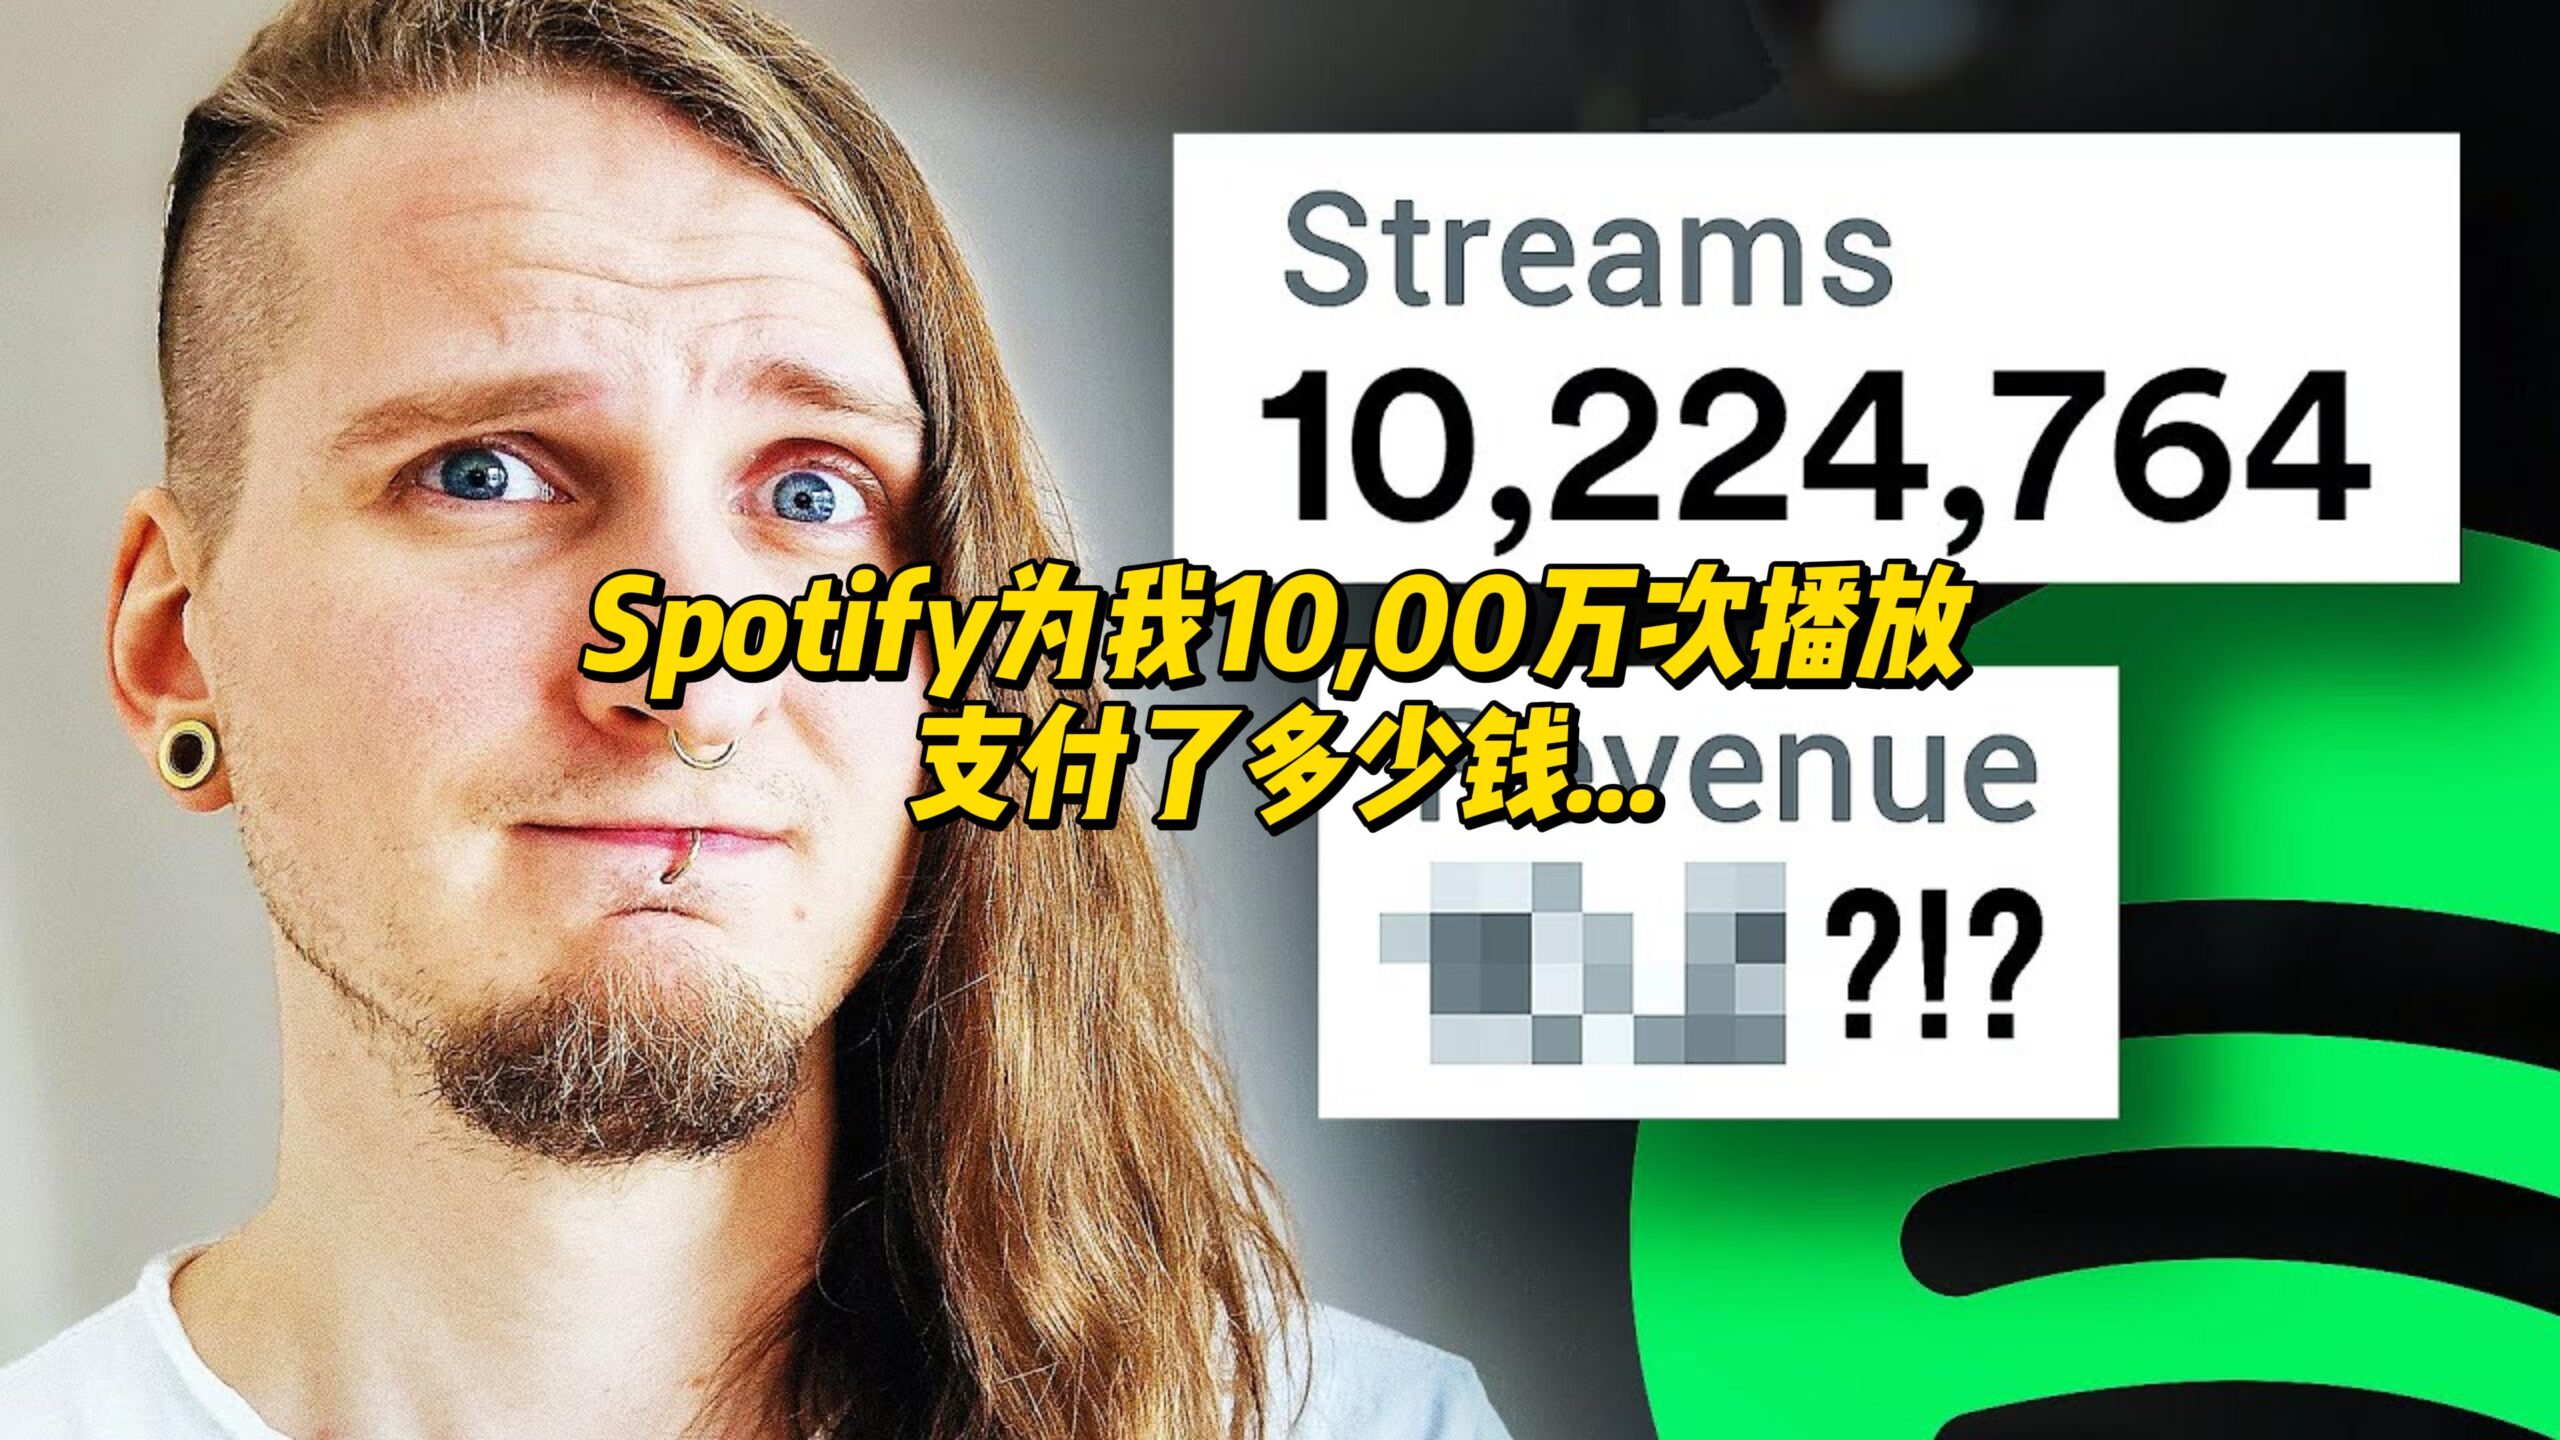 【中字】Spotify为我10,00万次播放支付了多少钱-古桐博客